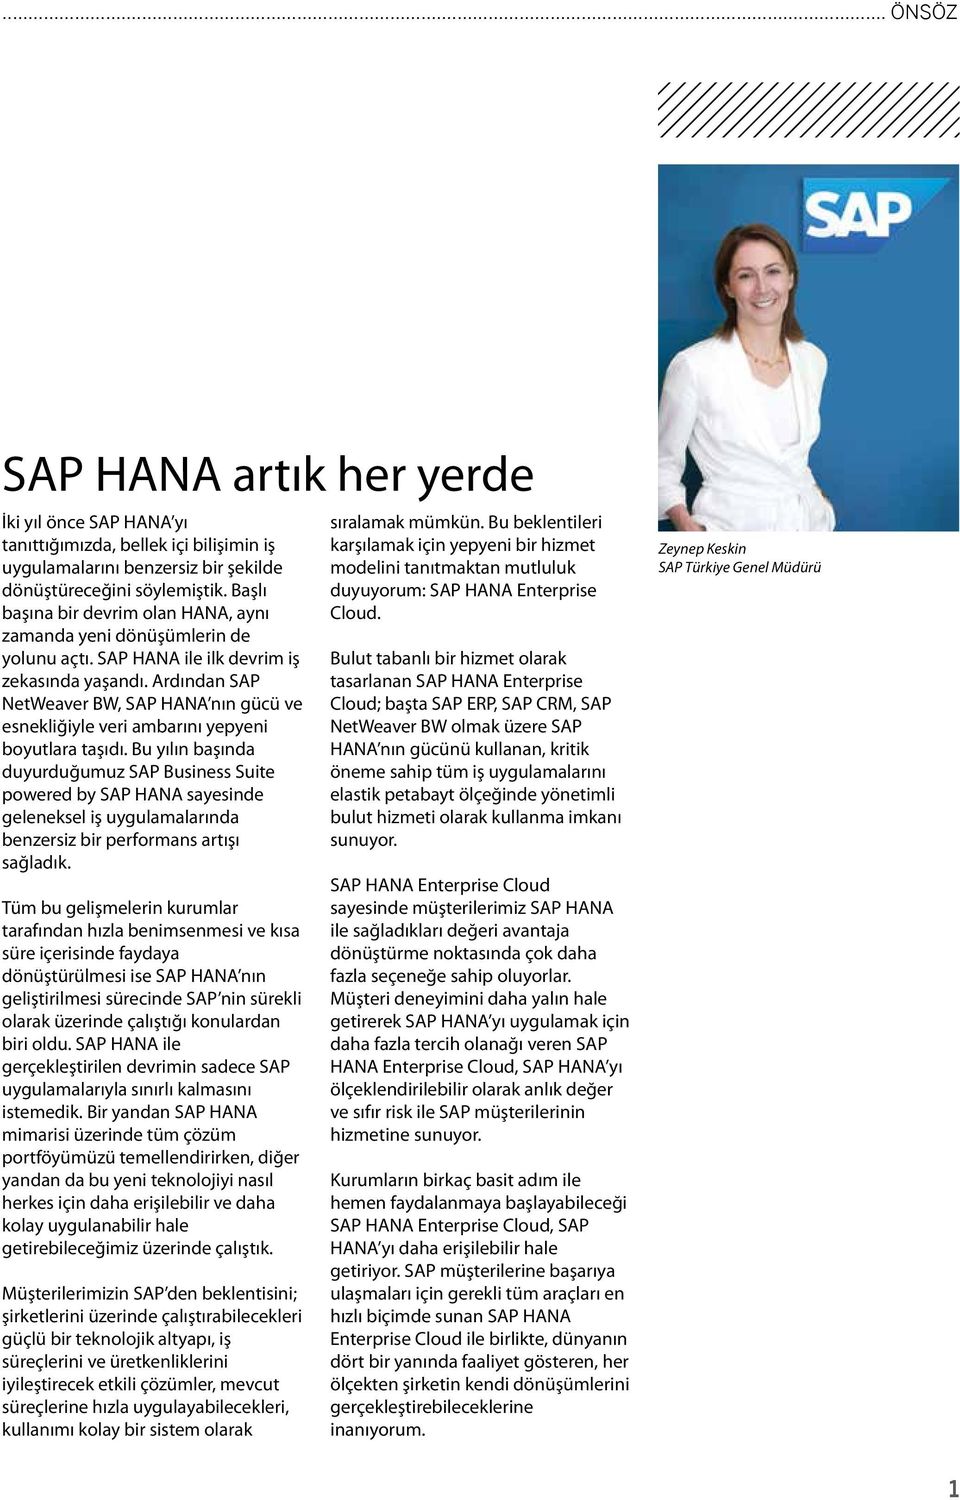 Ardından SAP NetWeaver BW, SAP HANA nın gücü ve esnekliğiyle veri ambarını yepyeni boyutlara taşıdı.